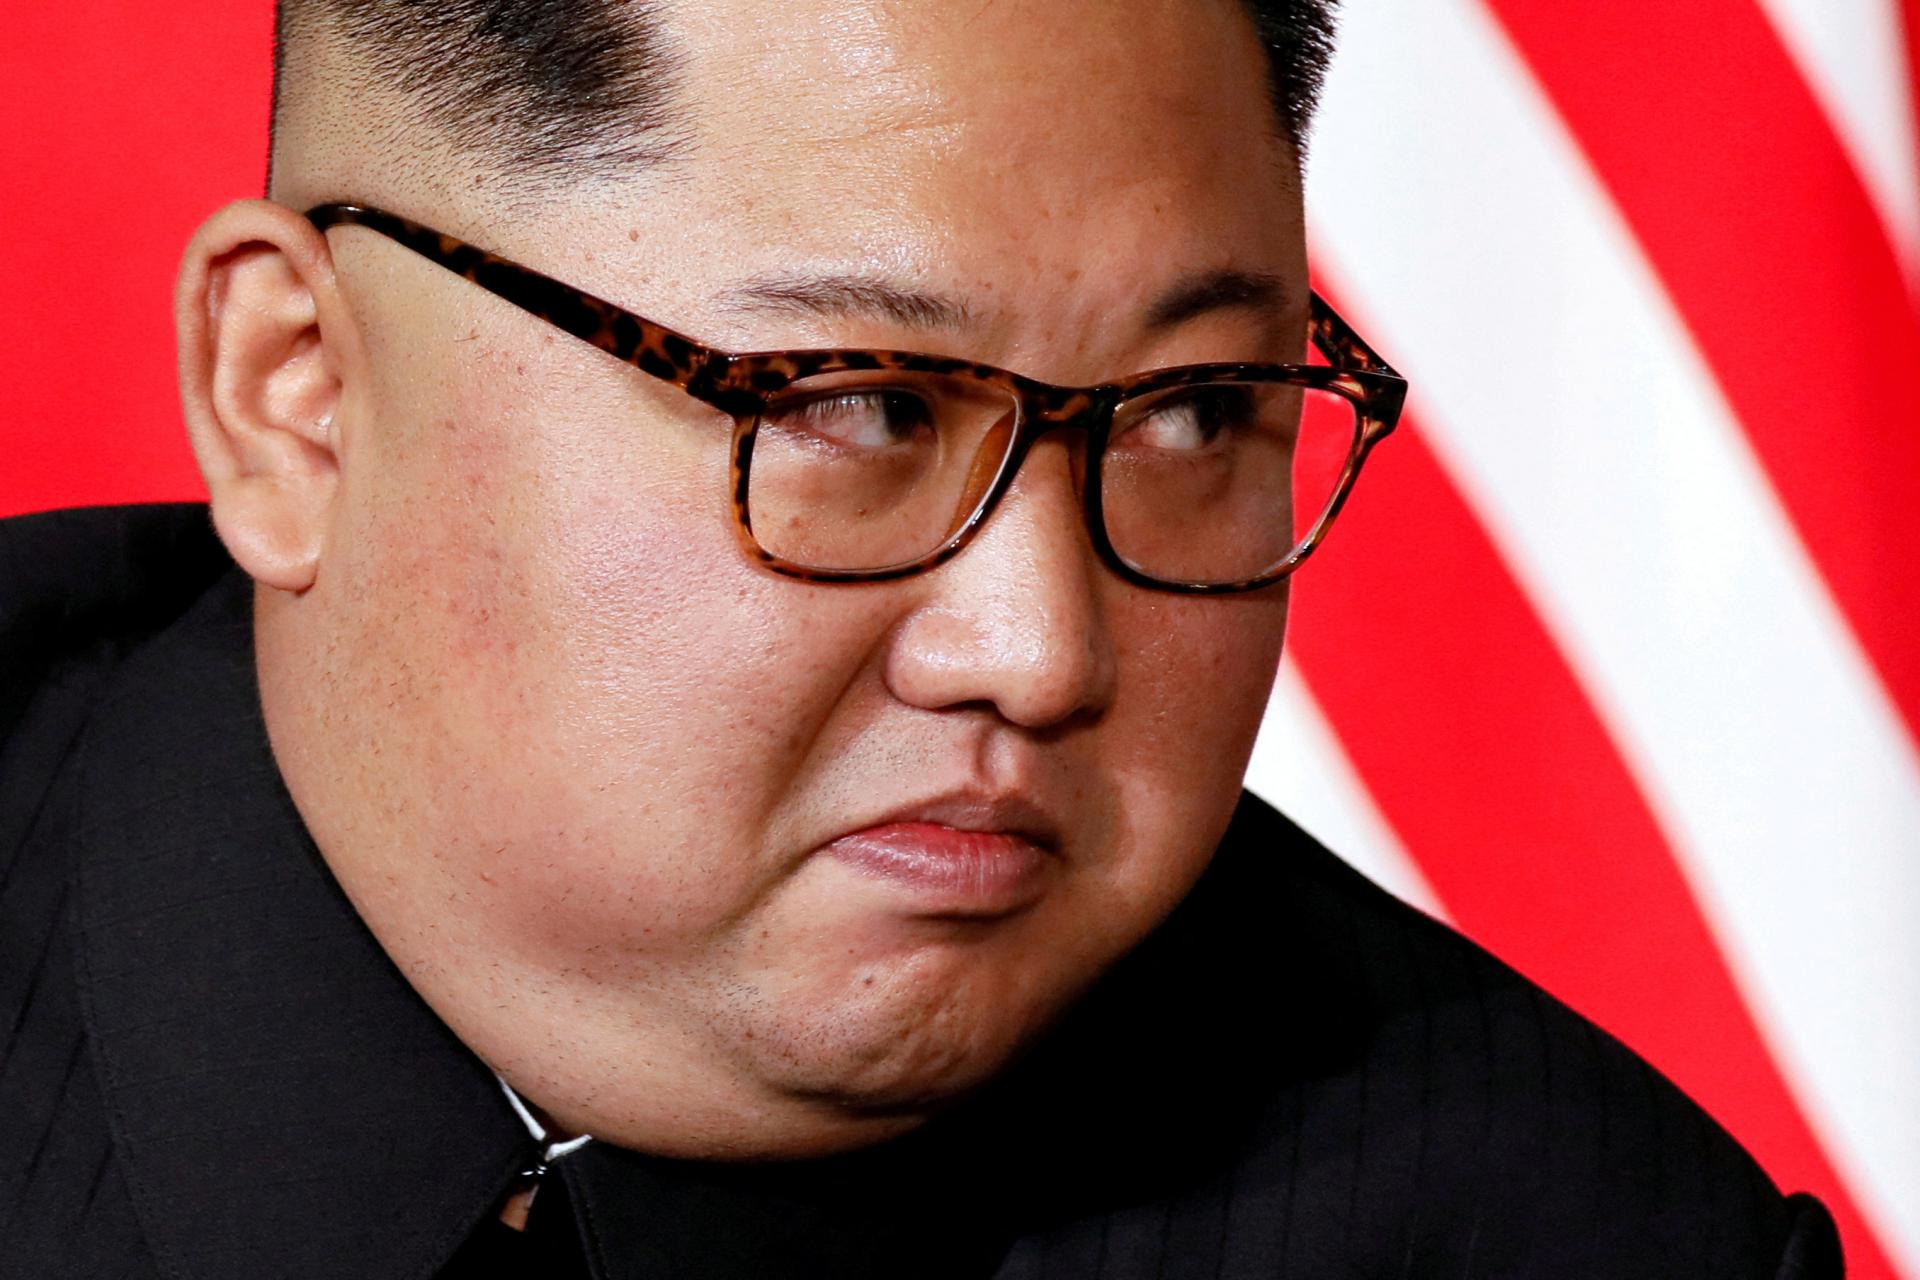 Kim Čong-un tajne zakázal samovraždy, ktorých prudko pribúda. Sú zradou socializmu, myslí si